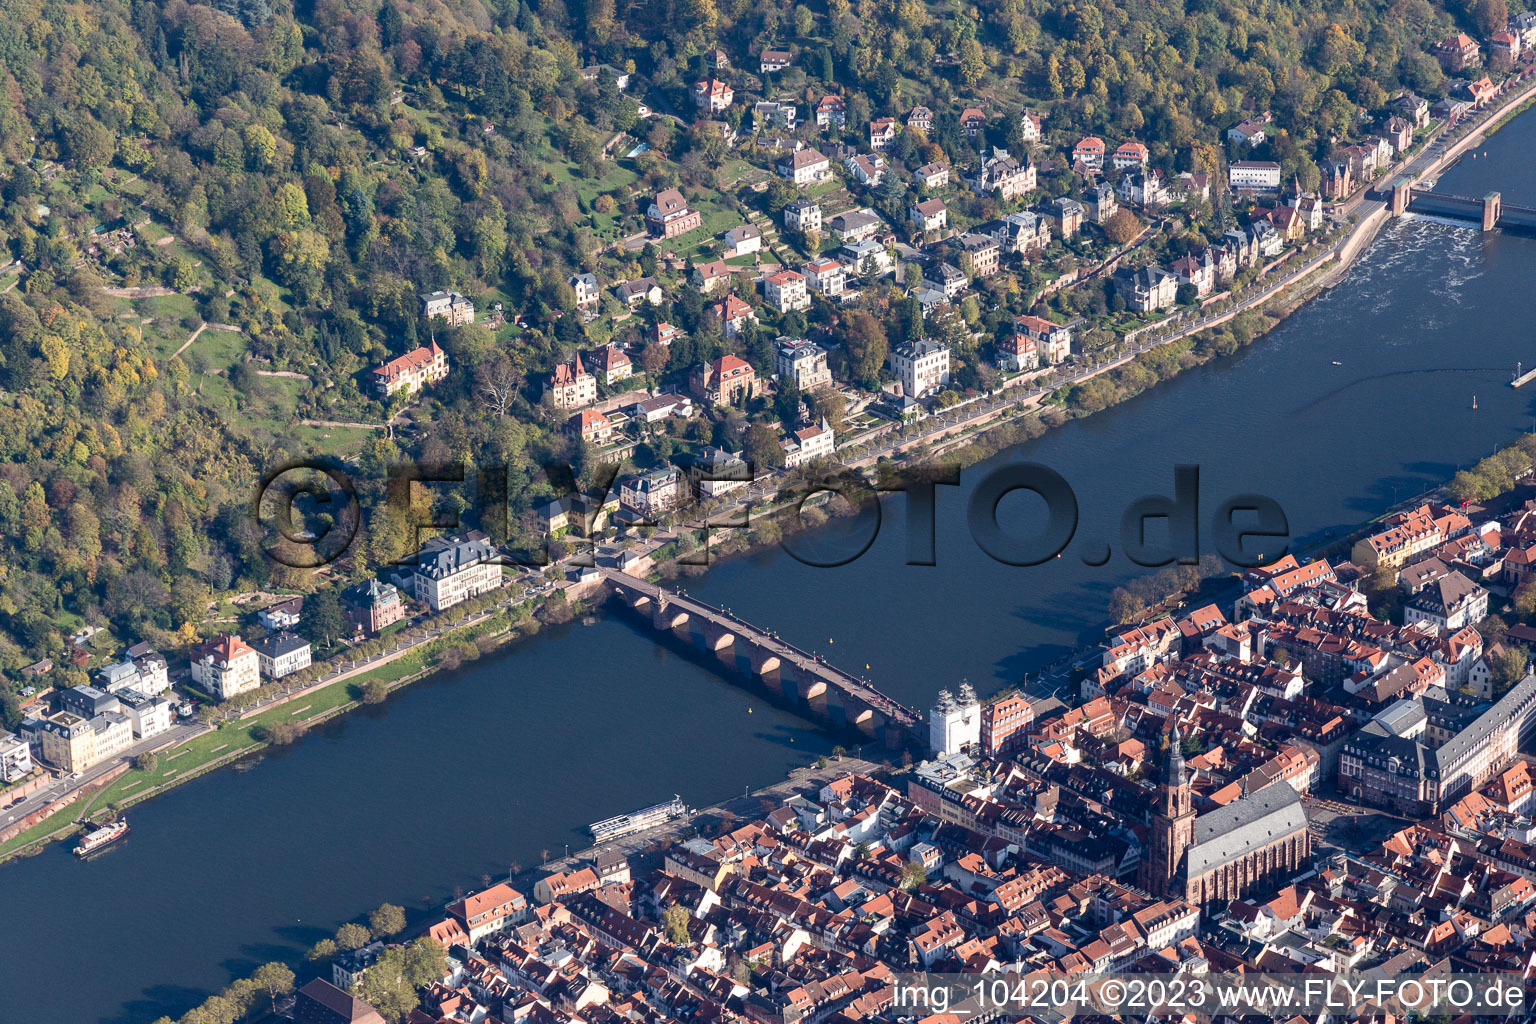 Aerial view of Old Bridge, Ziegelhäuser Landstr in the district Neuenheim in Heidelberg in the state Baden-Wuerttemberg, Germany